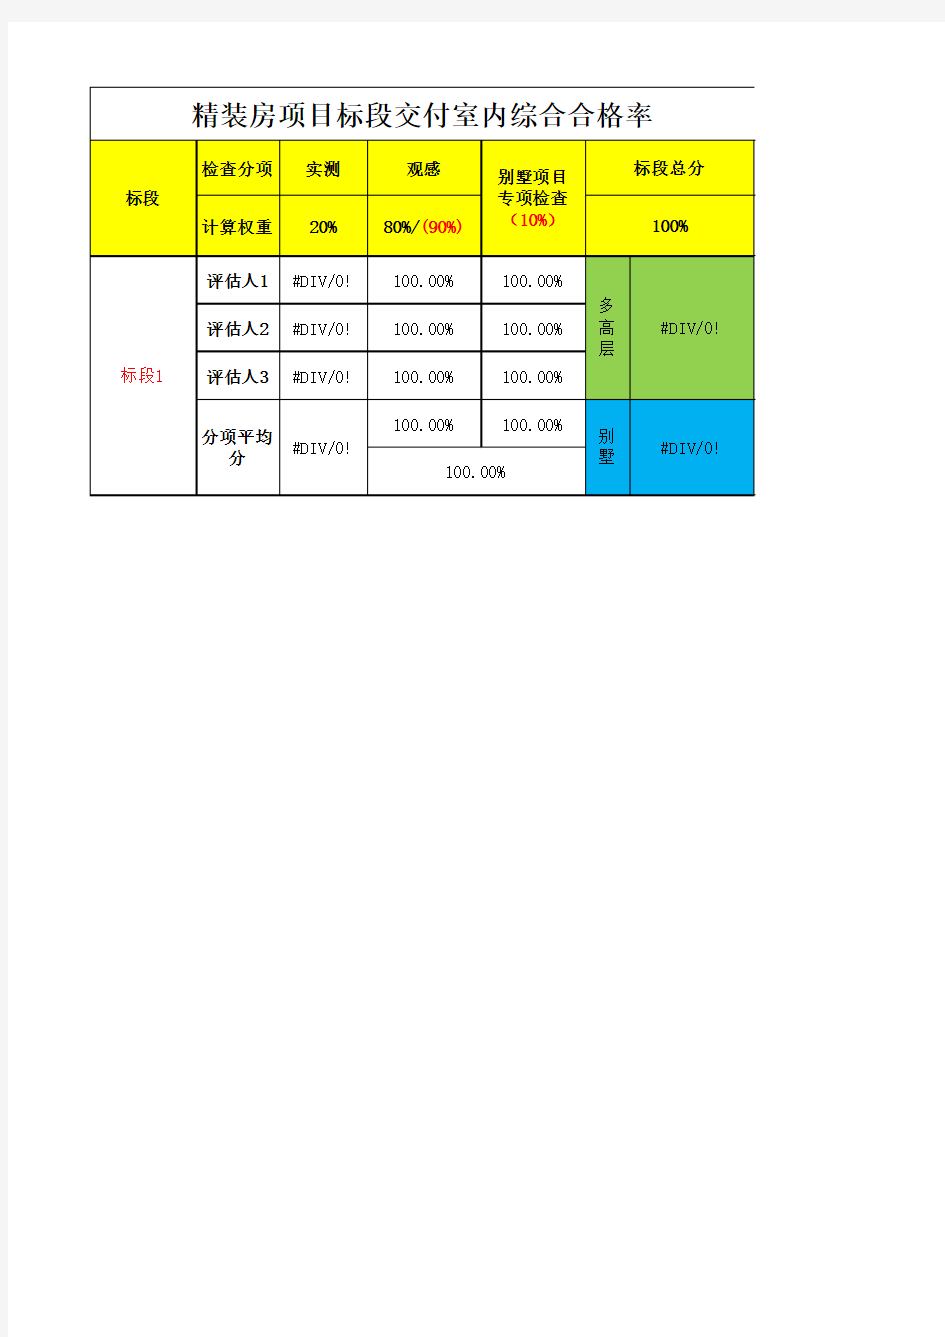 融创中国标准户型精装房交付评估标准日